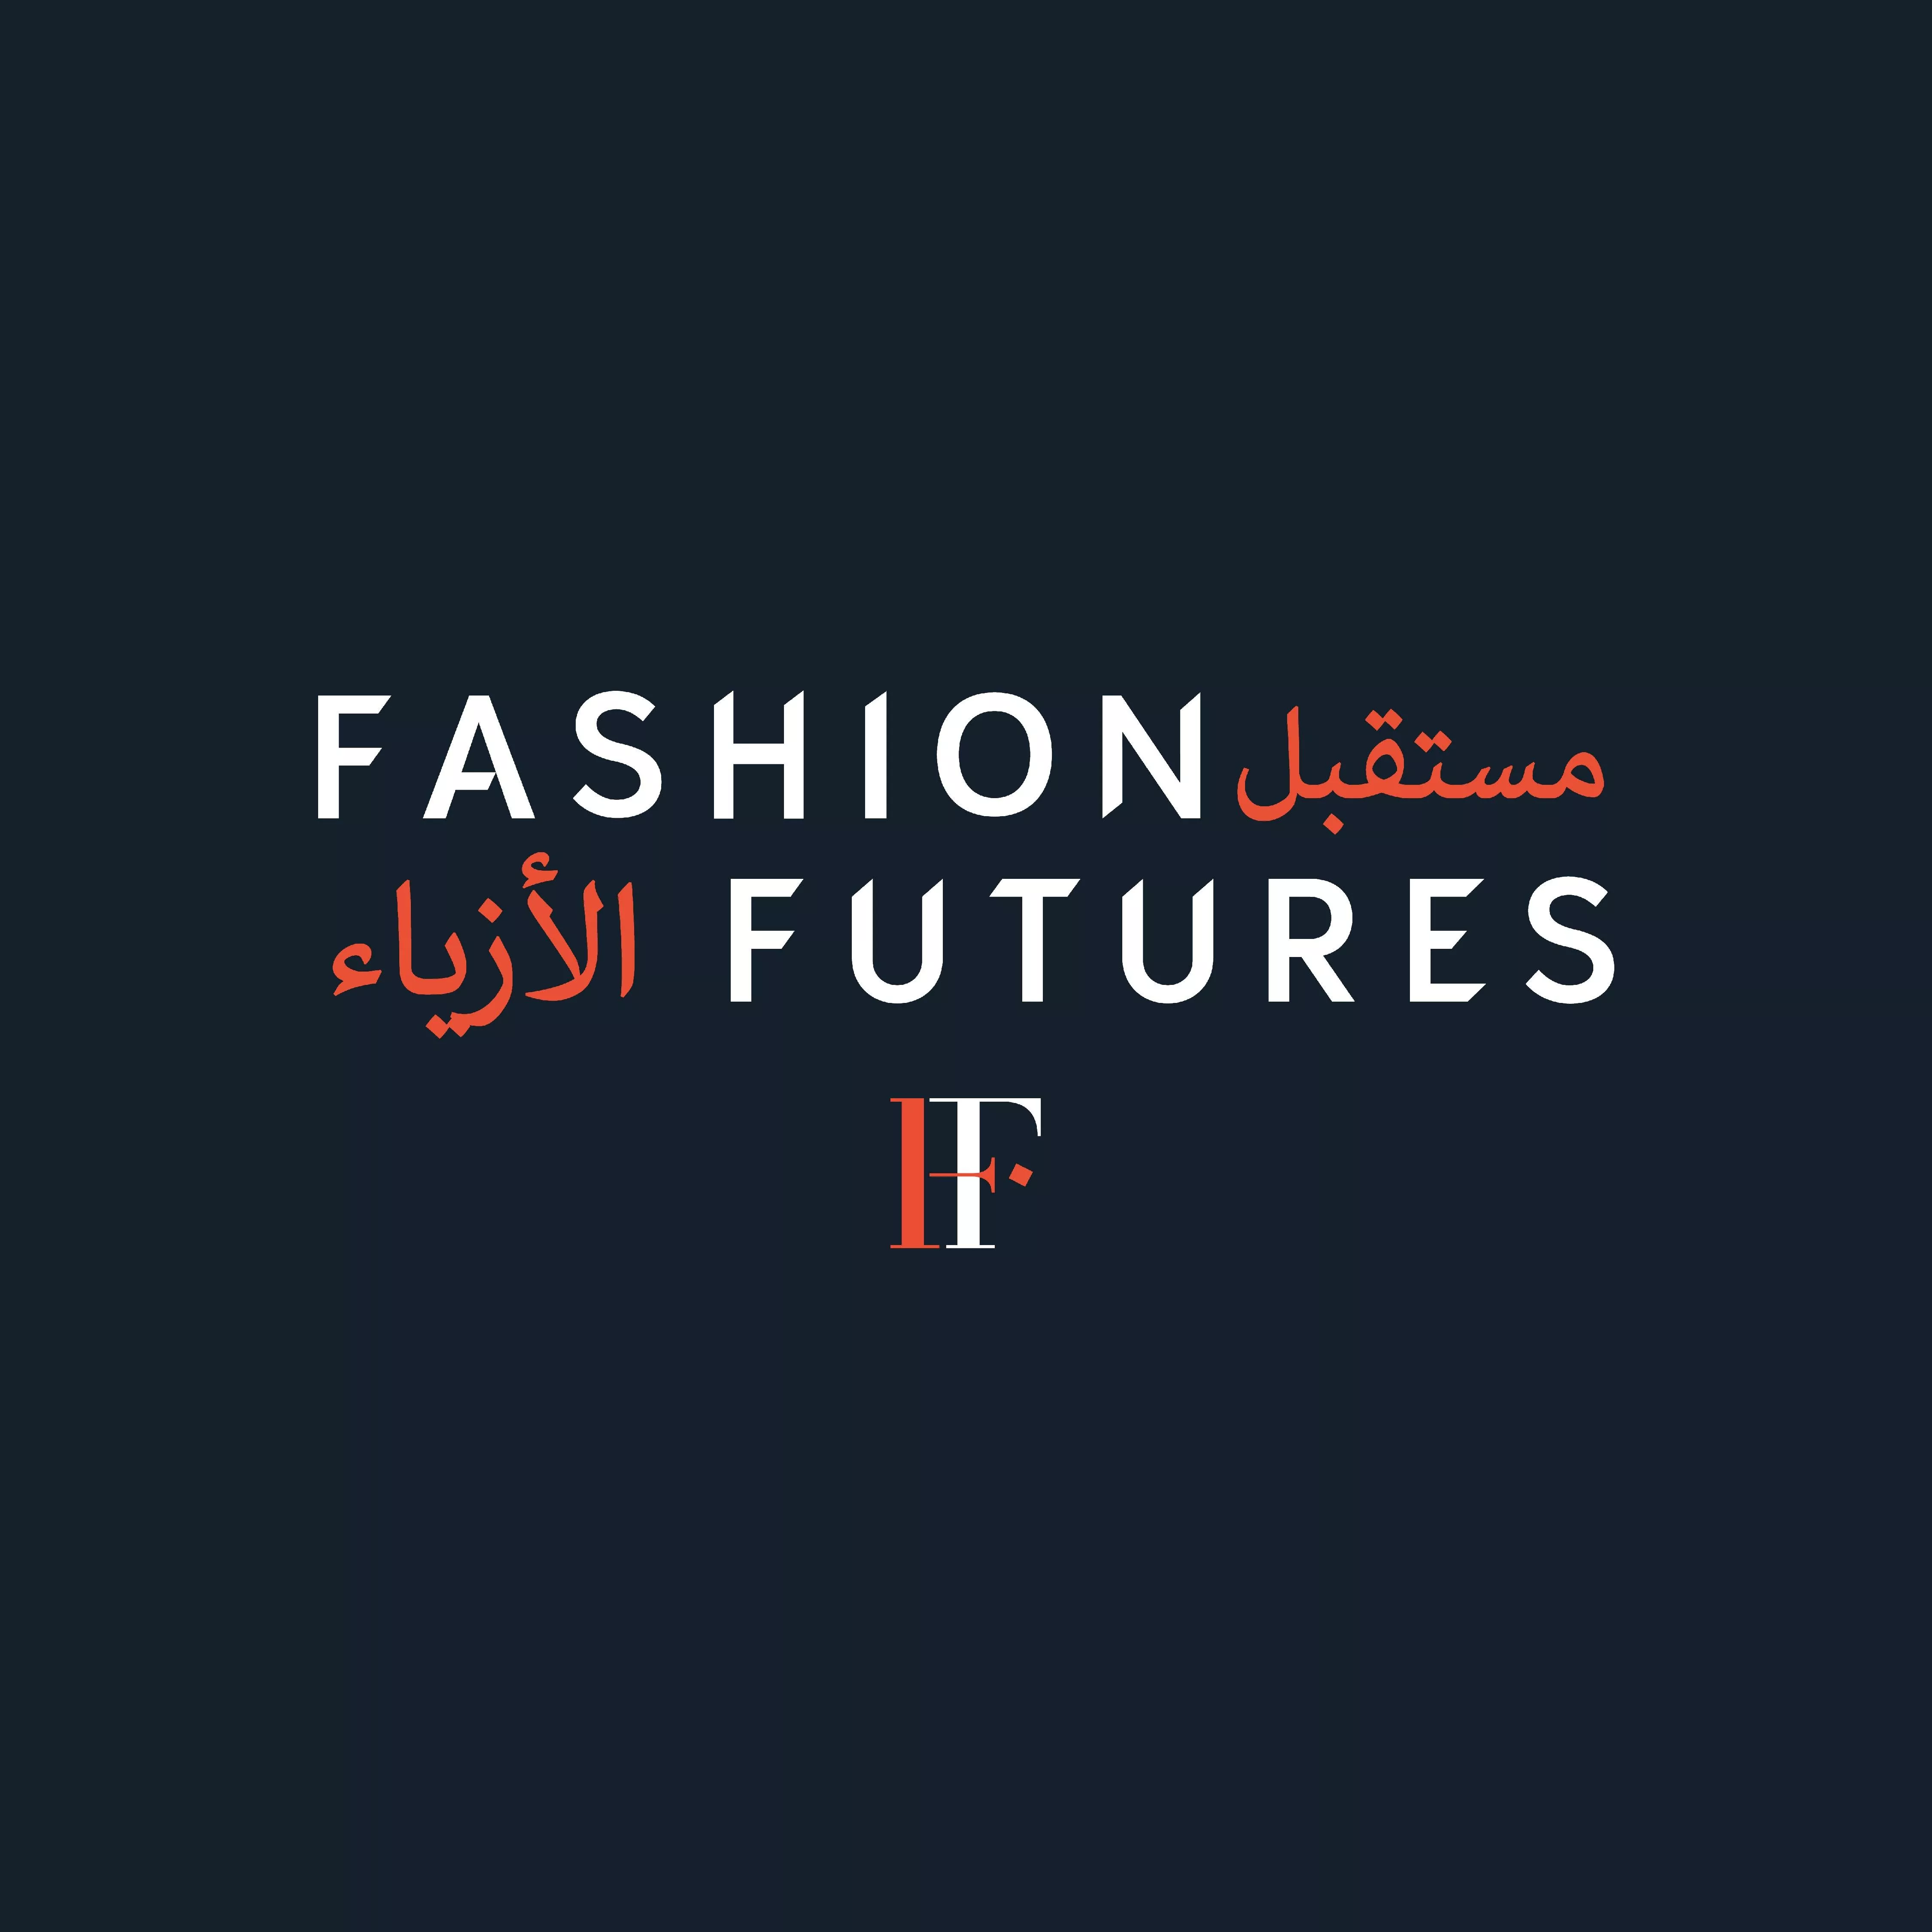 هيئة الأزياء تطلق ملتقى مستقبل الأزياء للتركيز على الإبتكار والإستدامة في الموضة